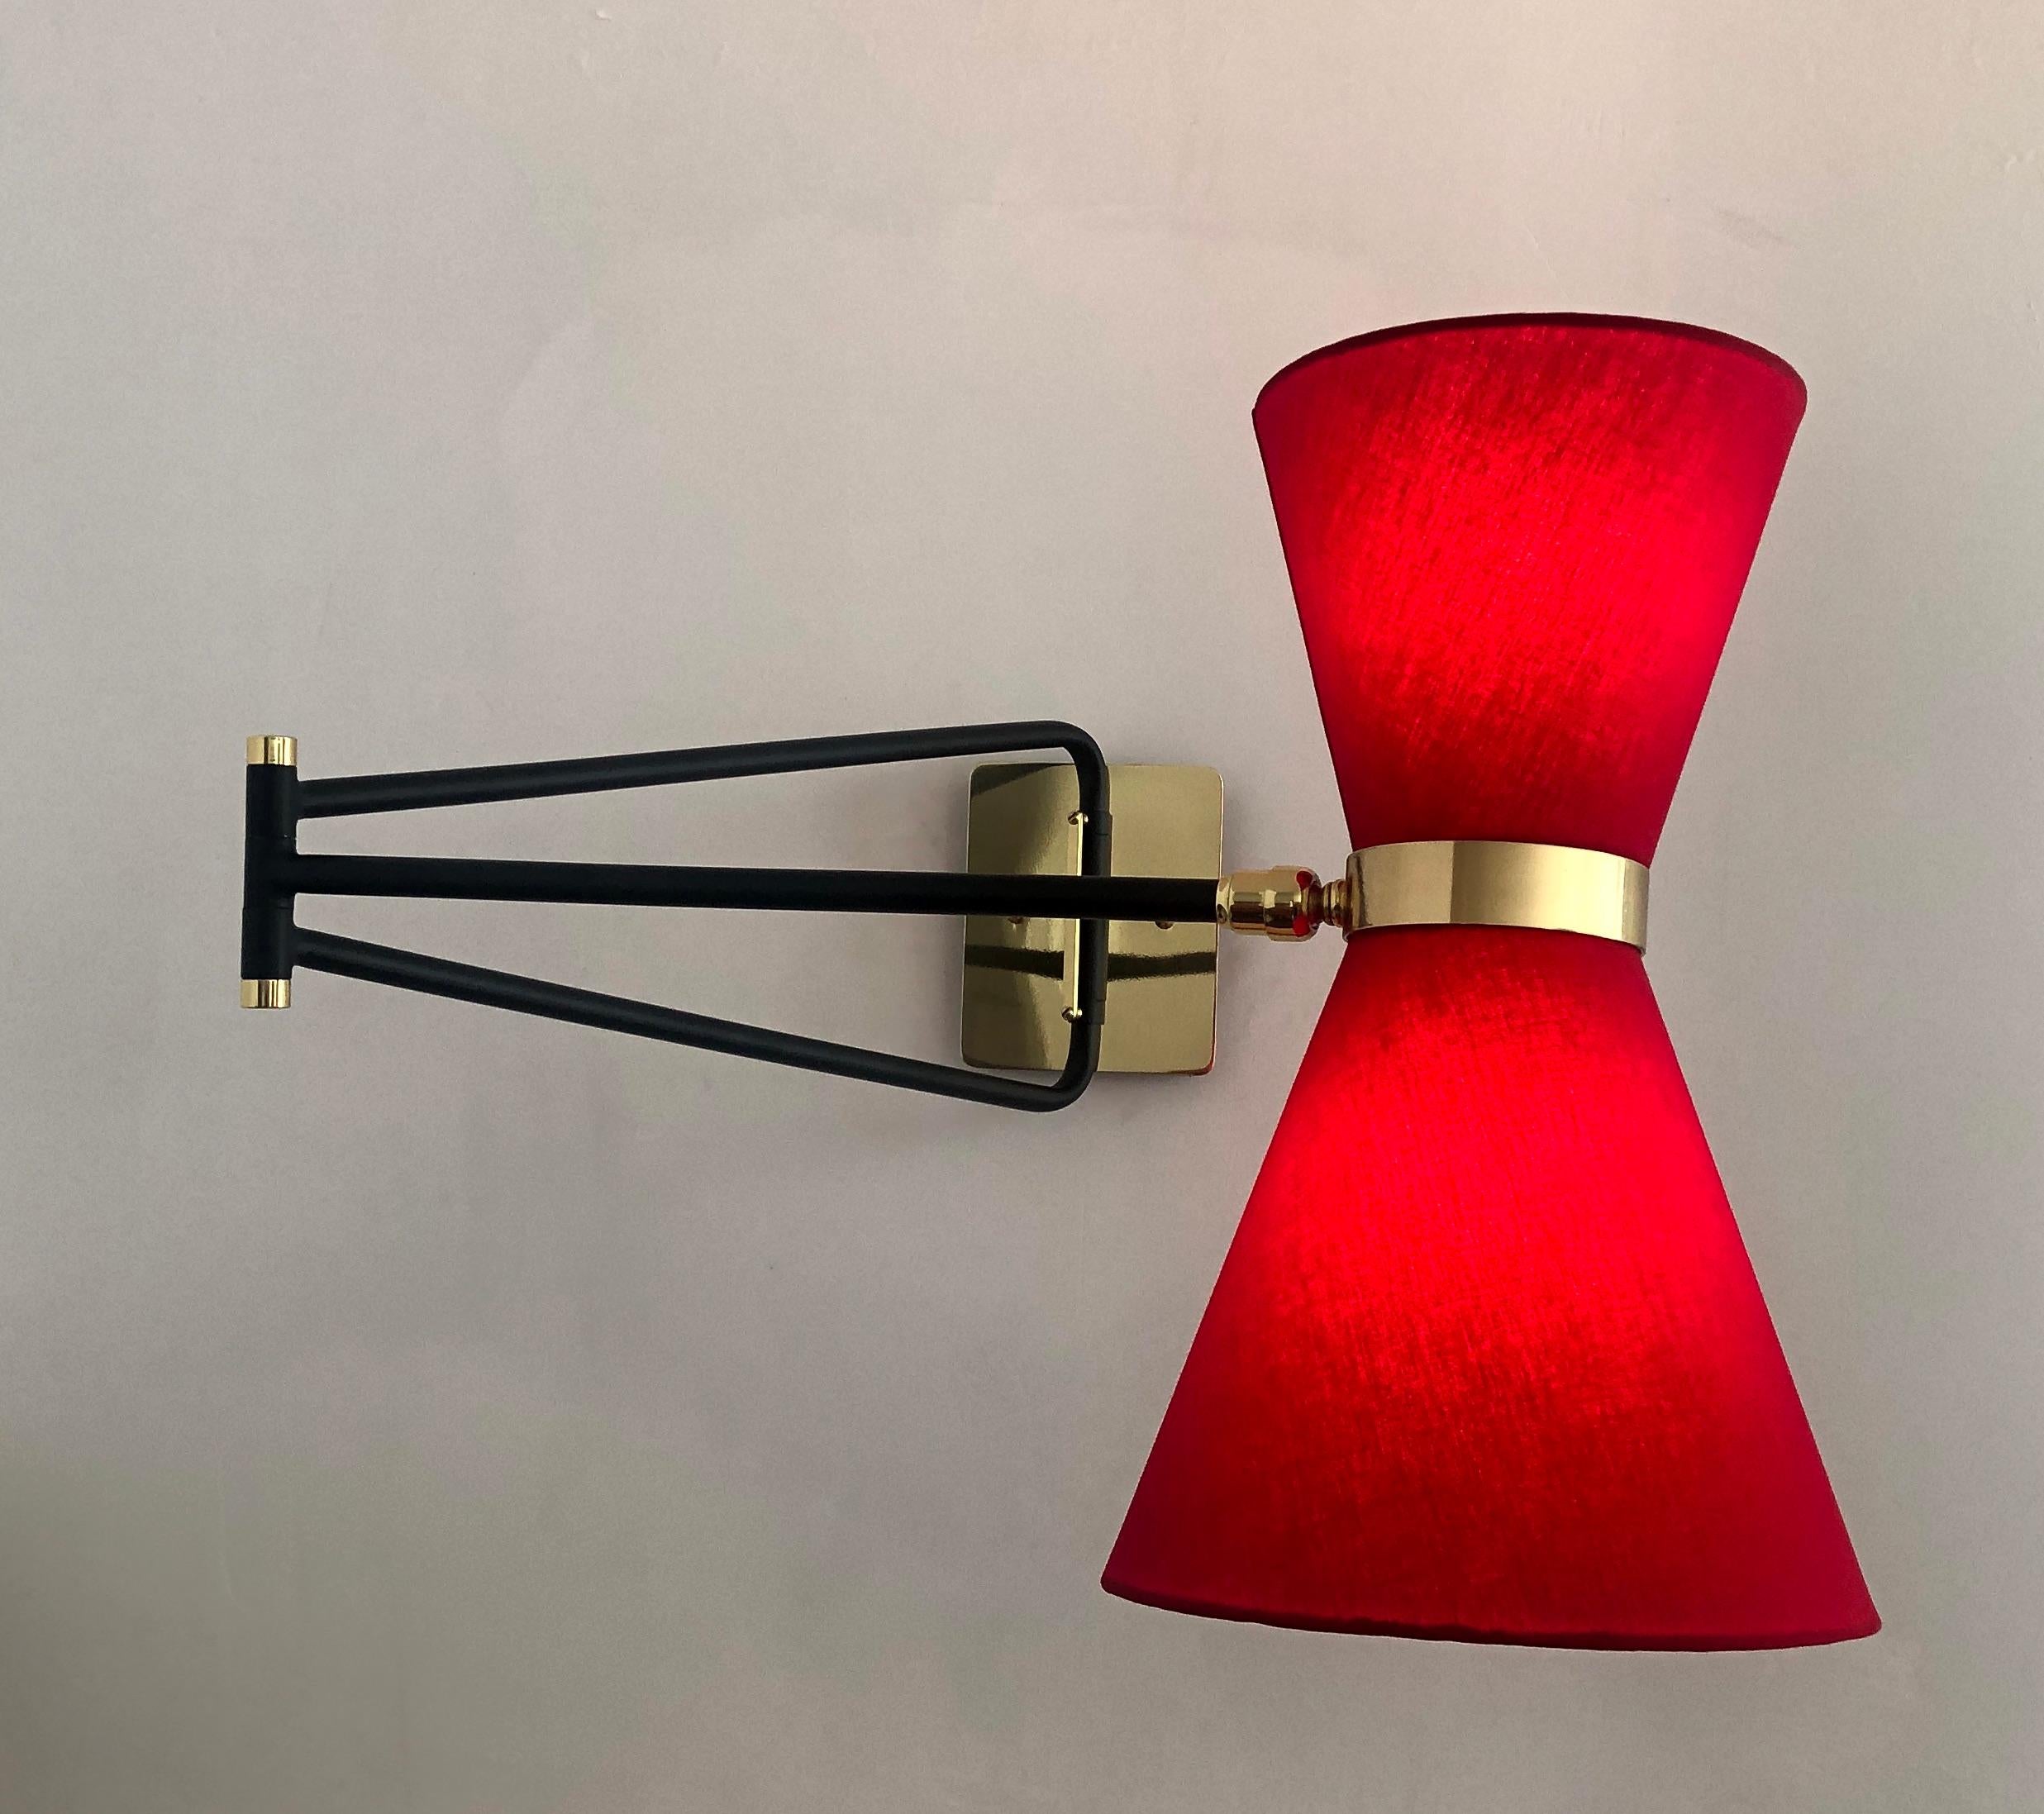 Diese elegante Leuchte ist von der französischen Midcentury-Mode der 1950er Jahre inspiriert. Die Leuchte mit ihrem doppelten Schirm und Gelenkarm ist eine vielseitige Lichtquelle. Der Kopf ist schwenkbar, um das Licht der beiden Kandelaberlampen in